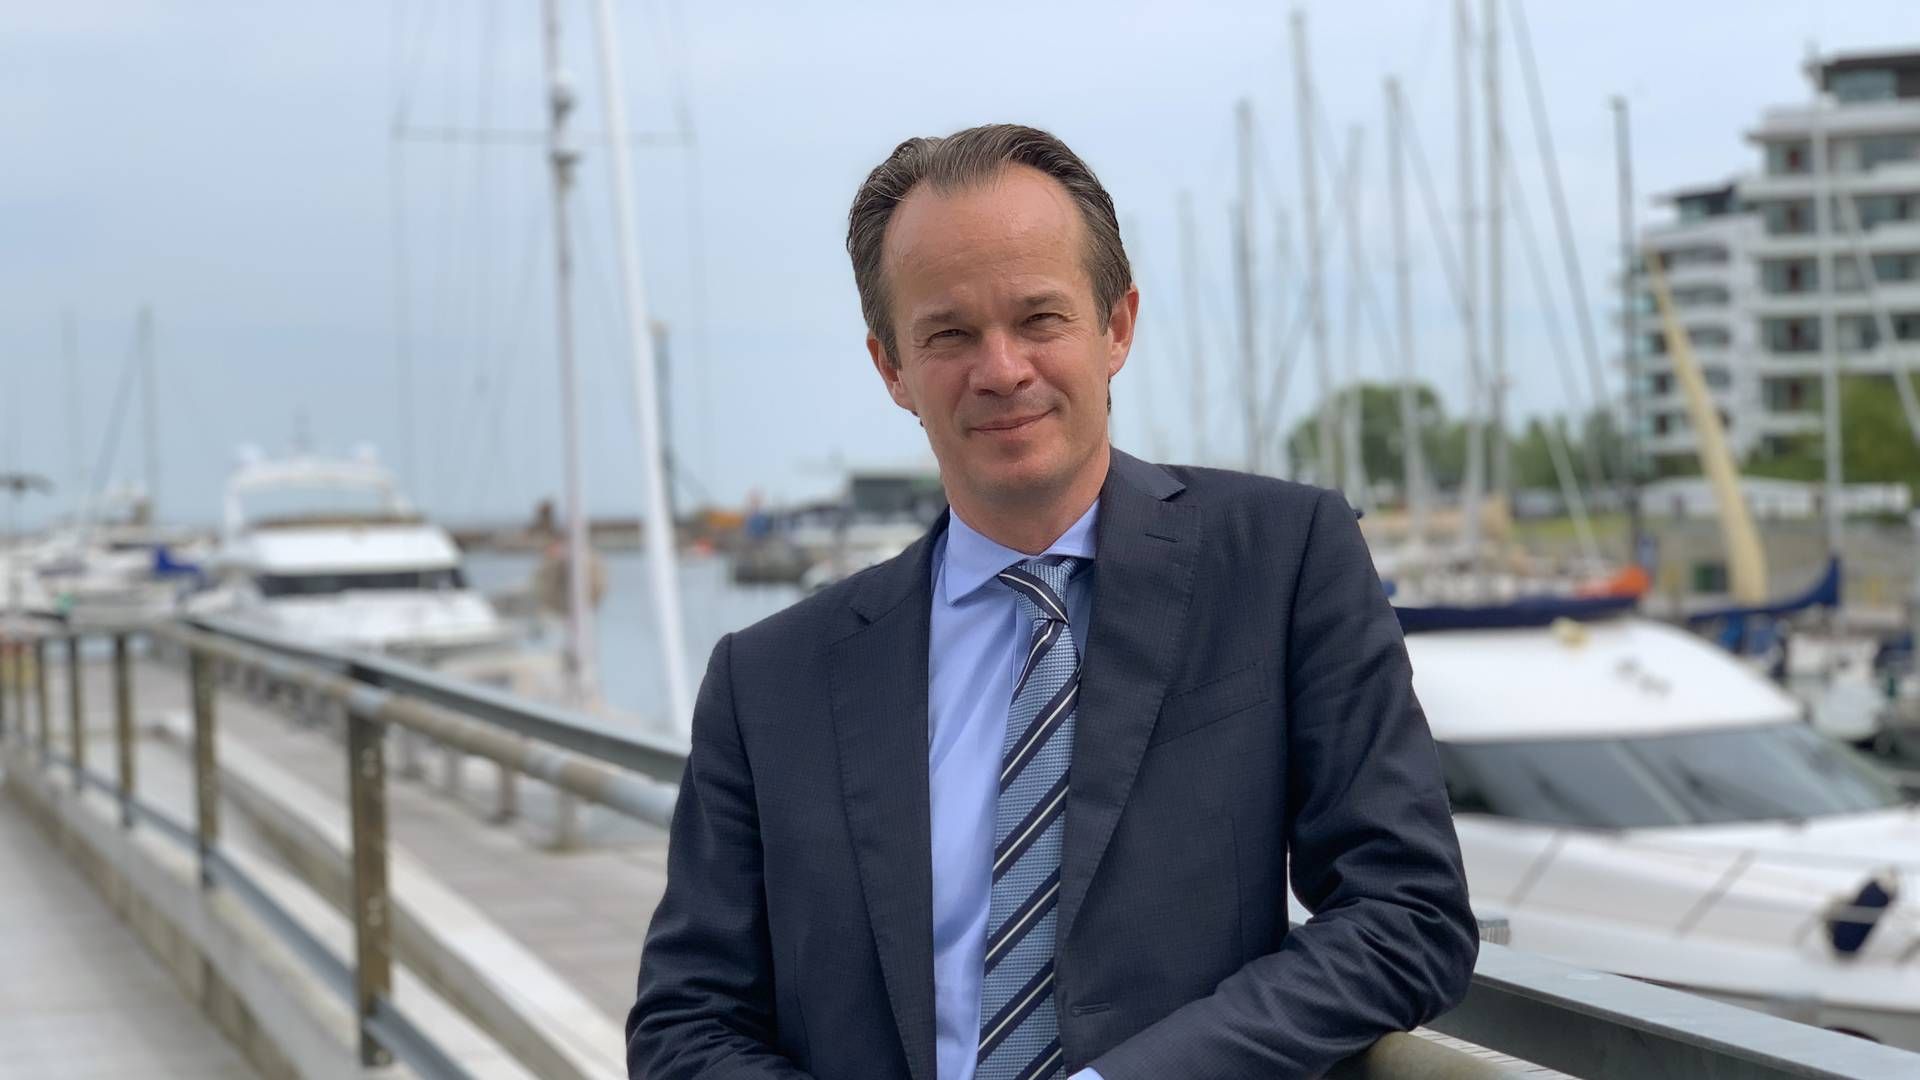 Jacob Meldgaard, CEO i Torm og formand for Danske Rederier, skærper klimamålet i tankrederiet. | Foto: PR/Torm